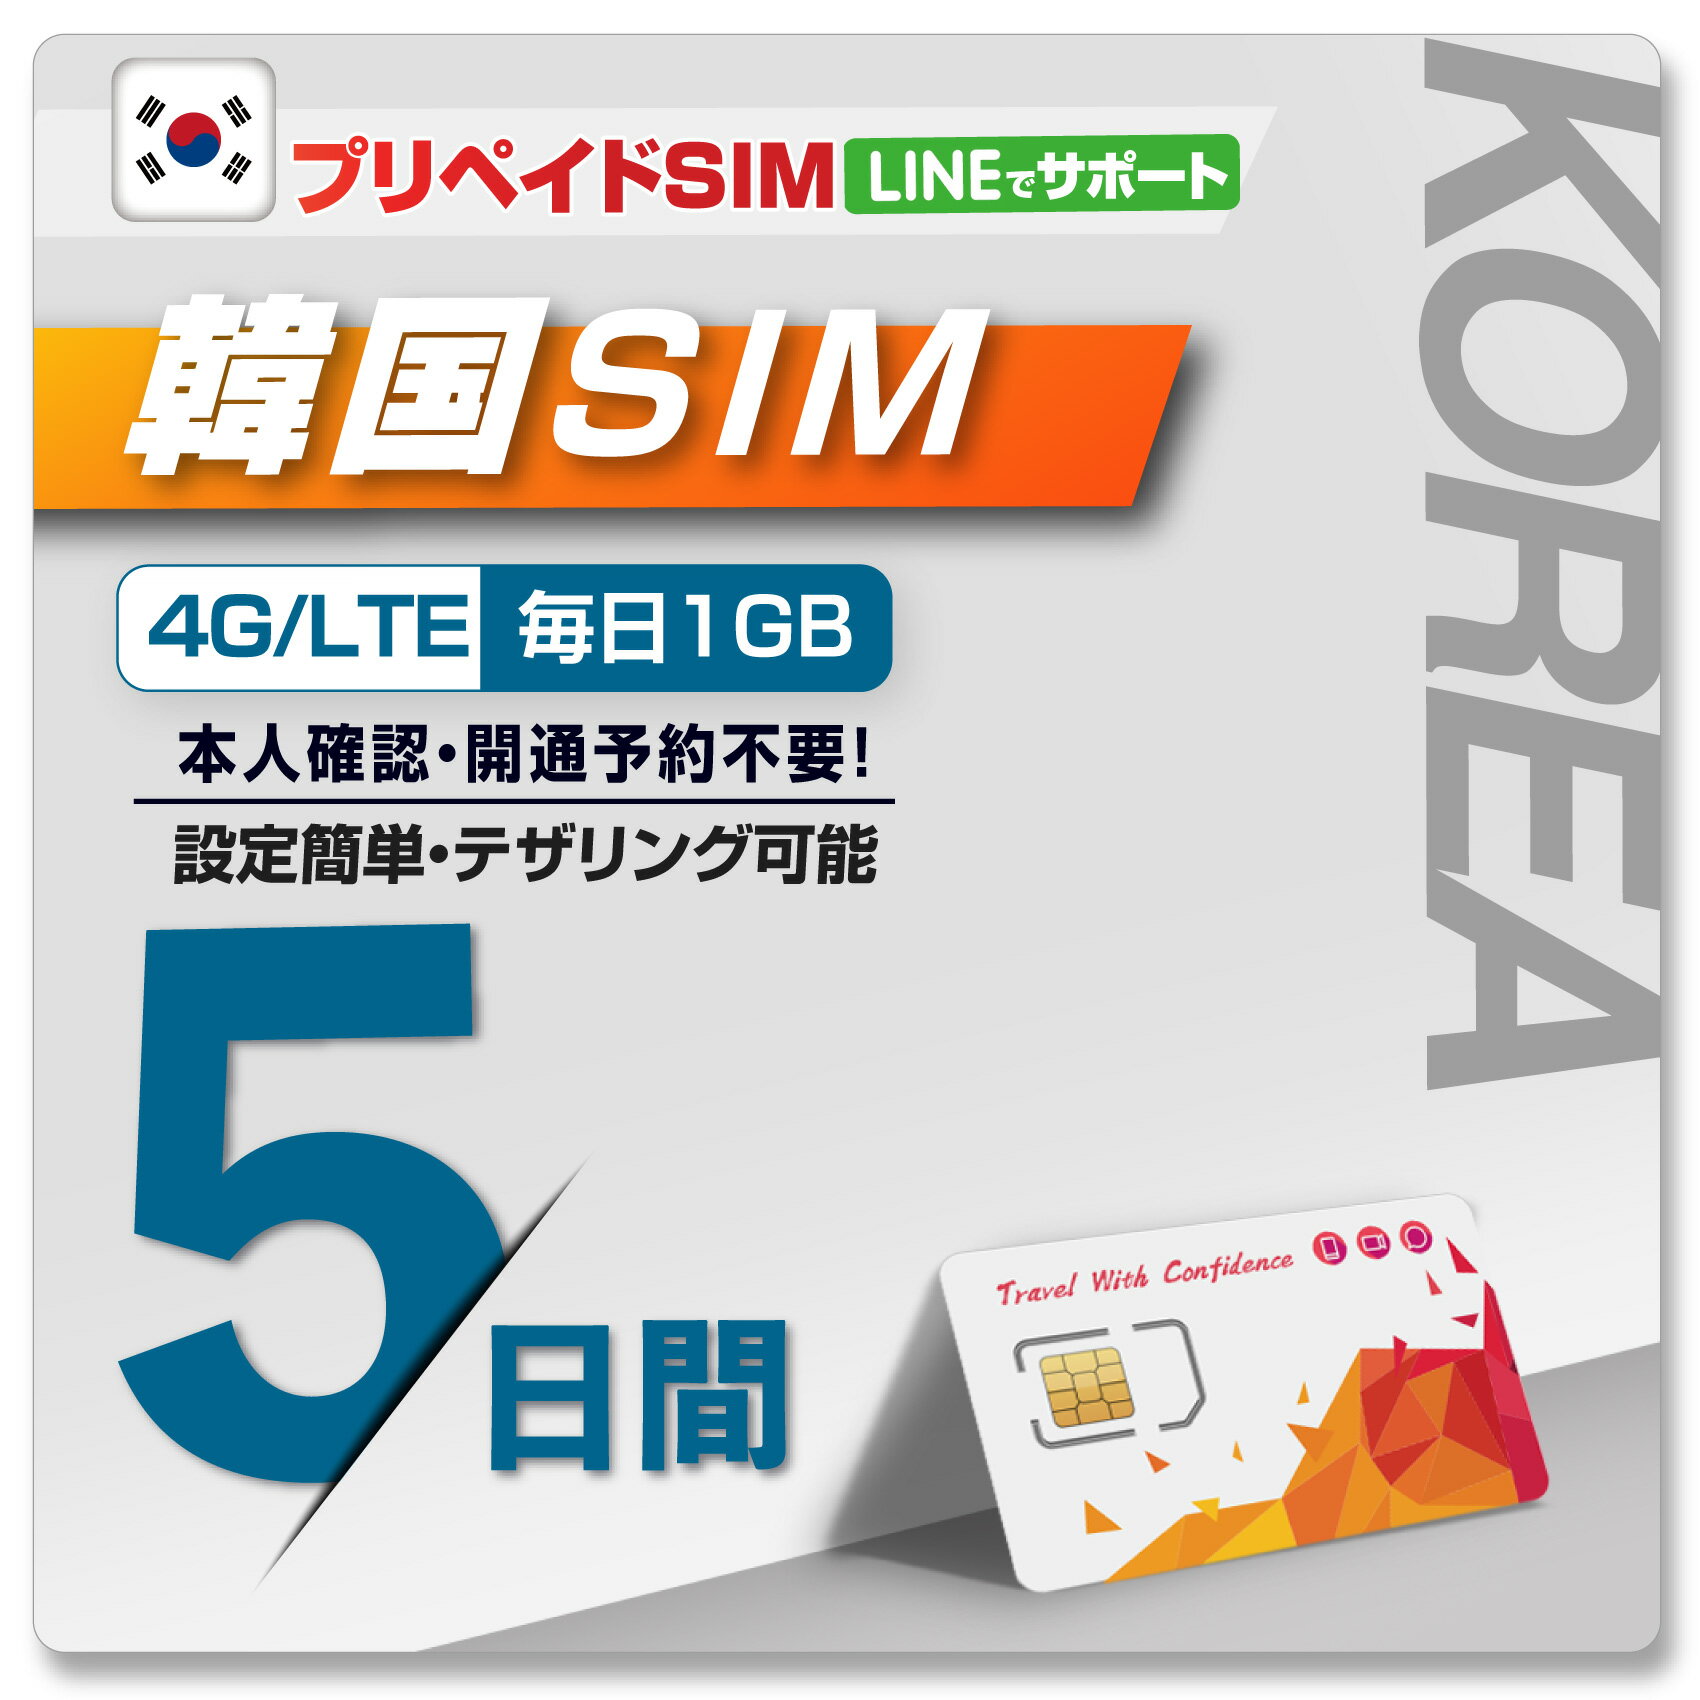 【WISE SIM/ PLUS TO GO! 】韓国プリペイドSIM 開通予約不要！ 利用日数 5日 データ容量毎日1GB データ通信専用SIM 4G・3G ローミングSIM SIMピン付 prepaid sim korea travel with sim pin ※galaxy端末では利用不可